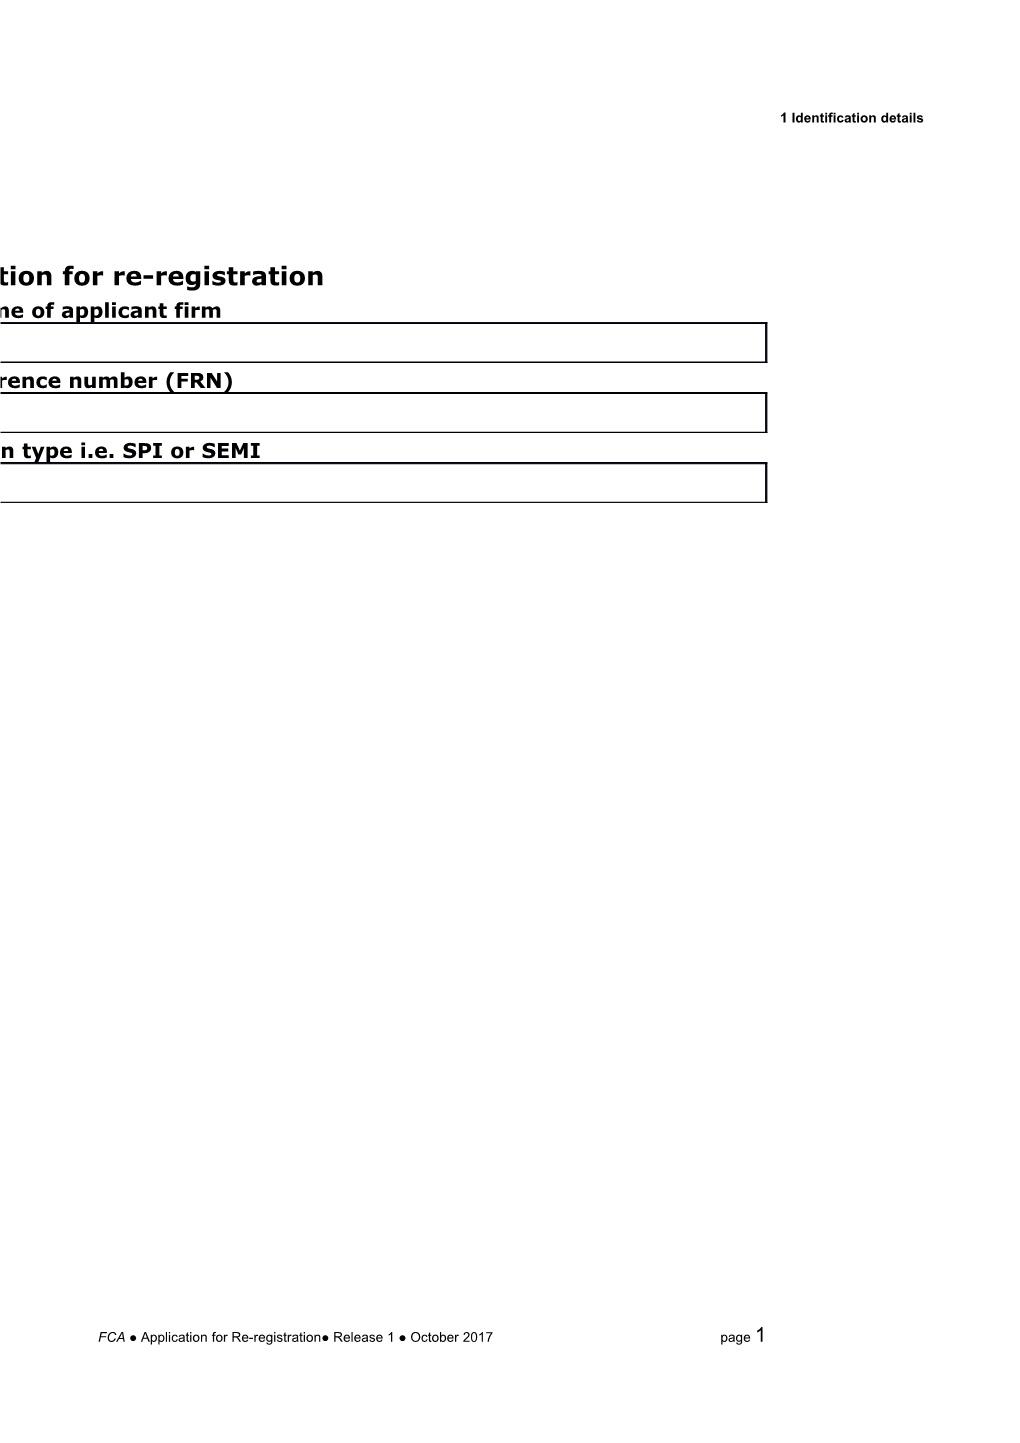 Re-Registration Form